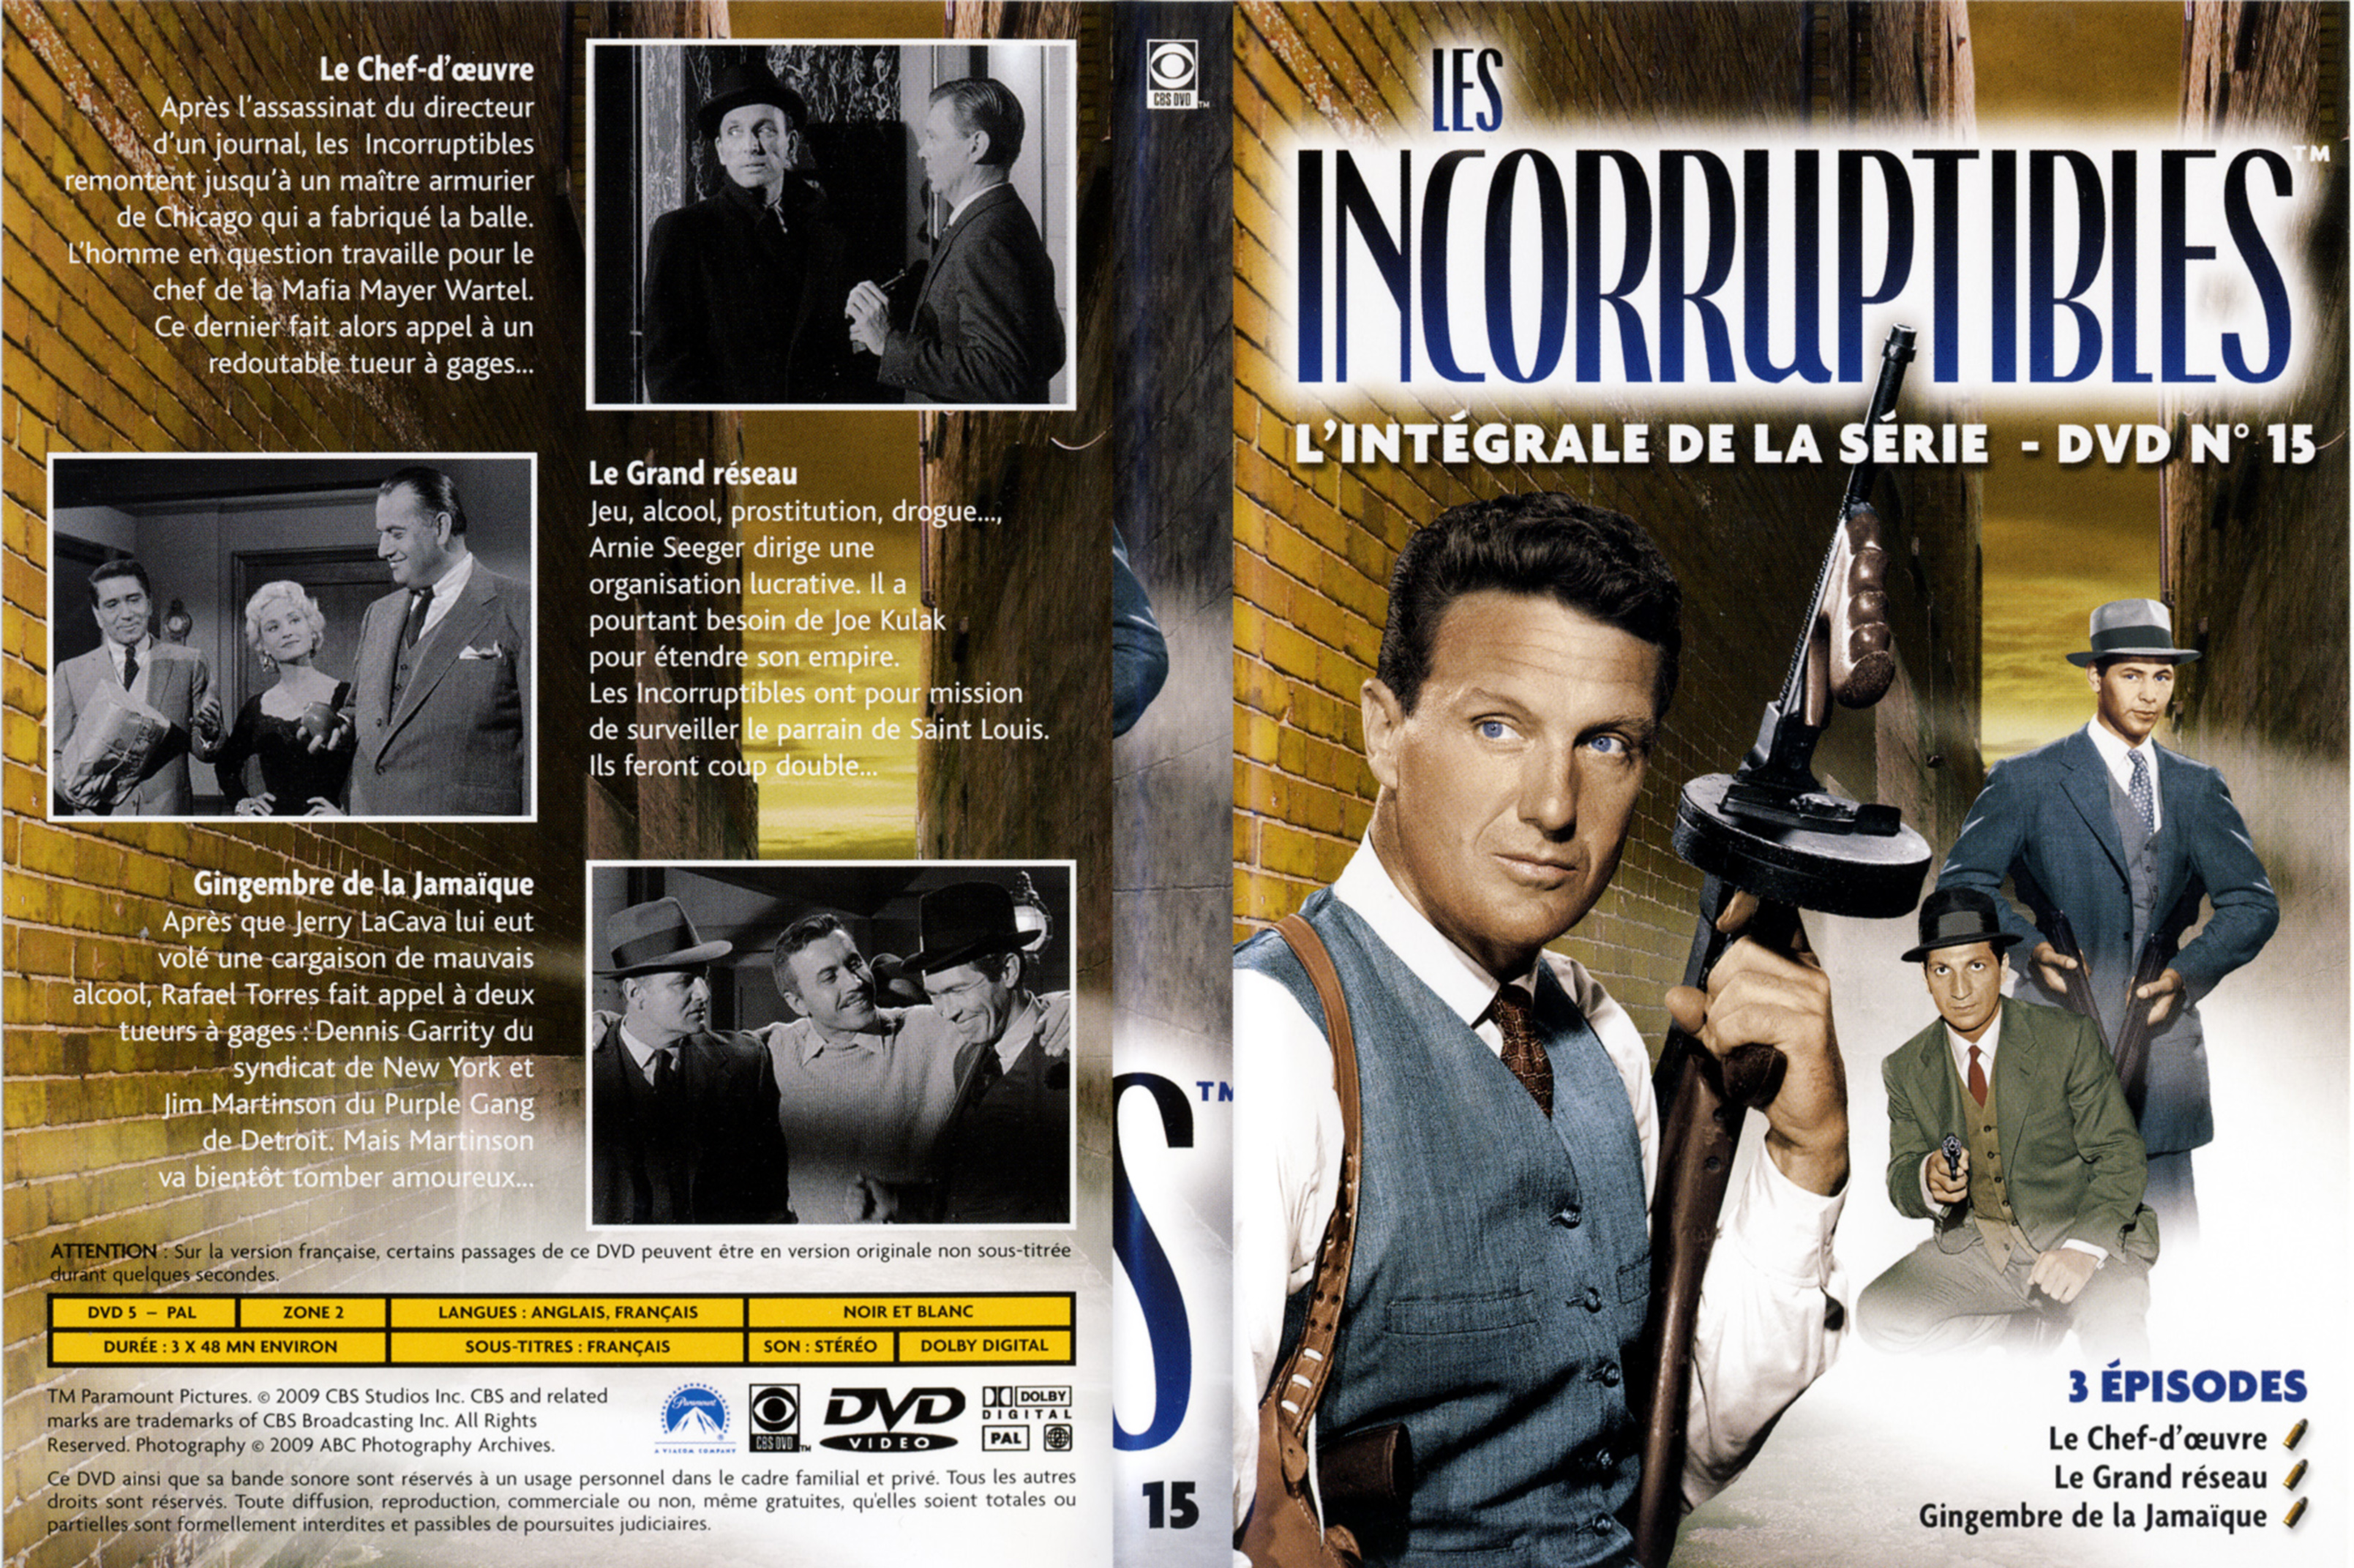 Jaquette DVD Les incorruptibles intgrale DVD 15